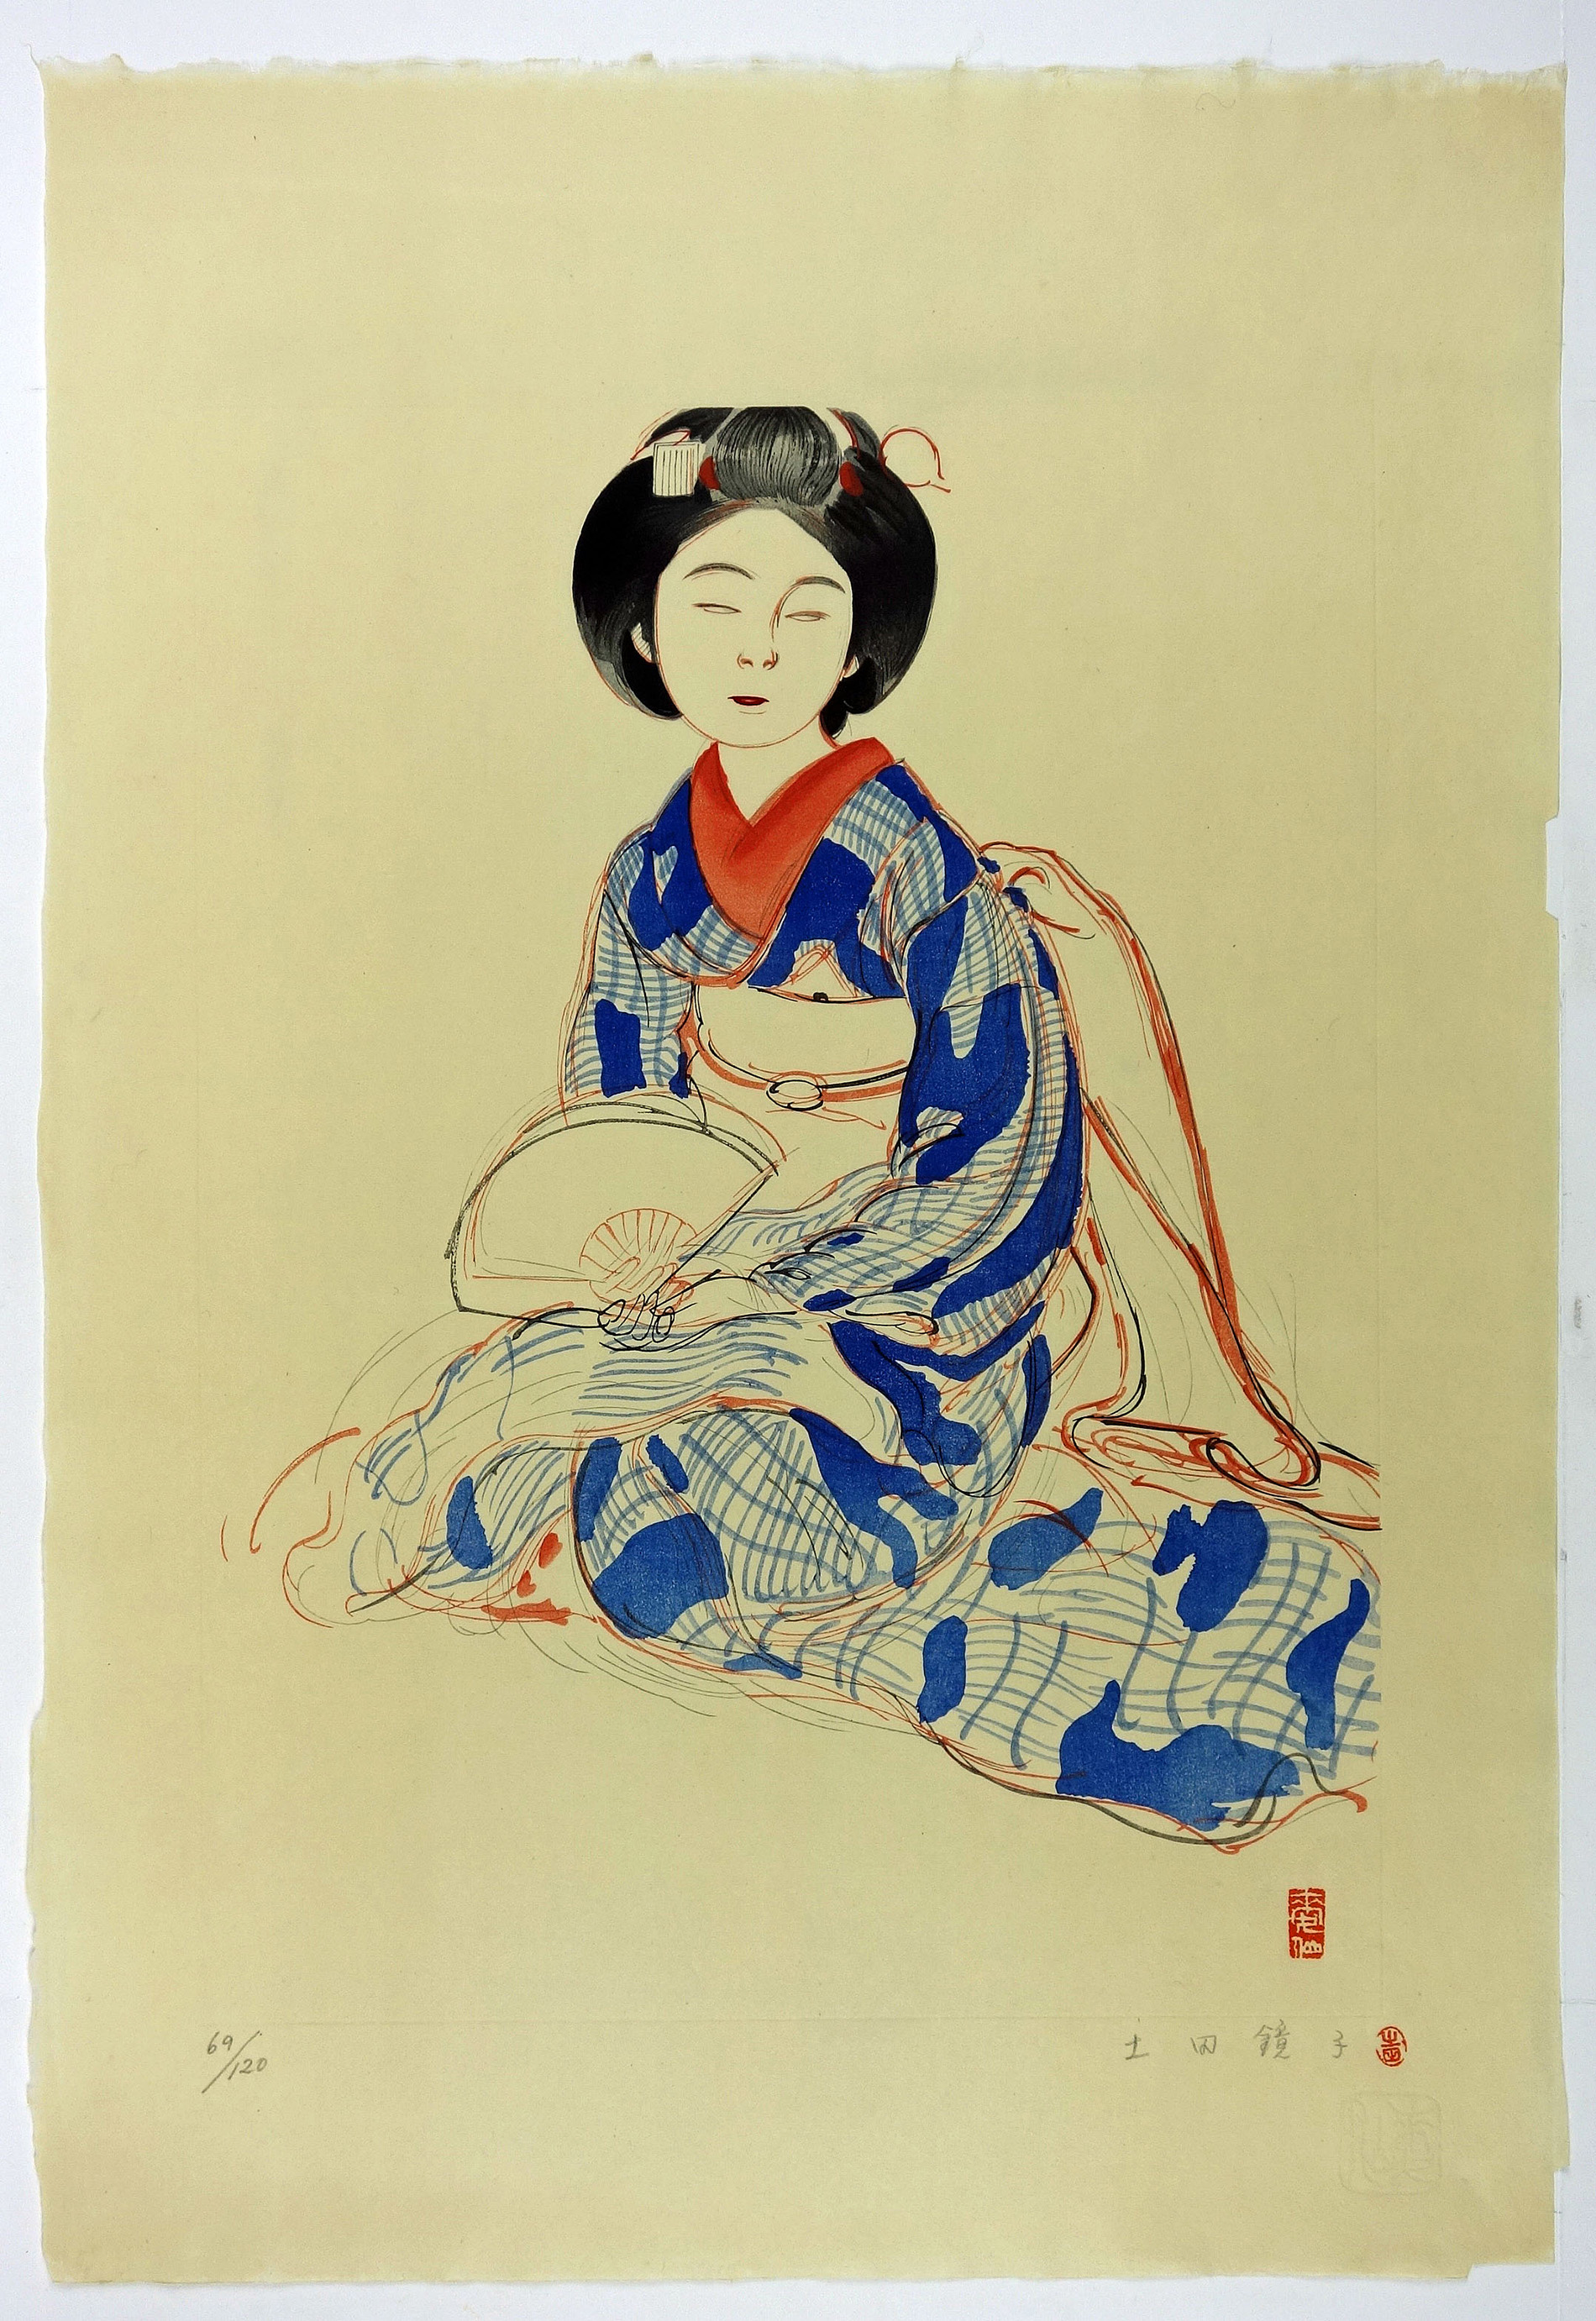 土田麦僊 木版画 「舞妓(素描)」 版画 日本画 女性画 素描 